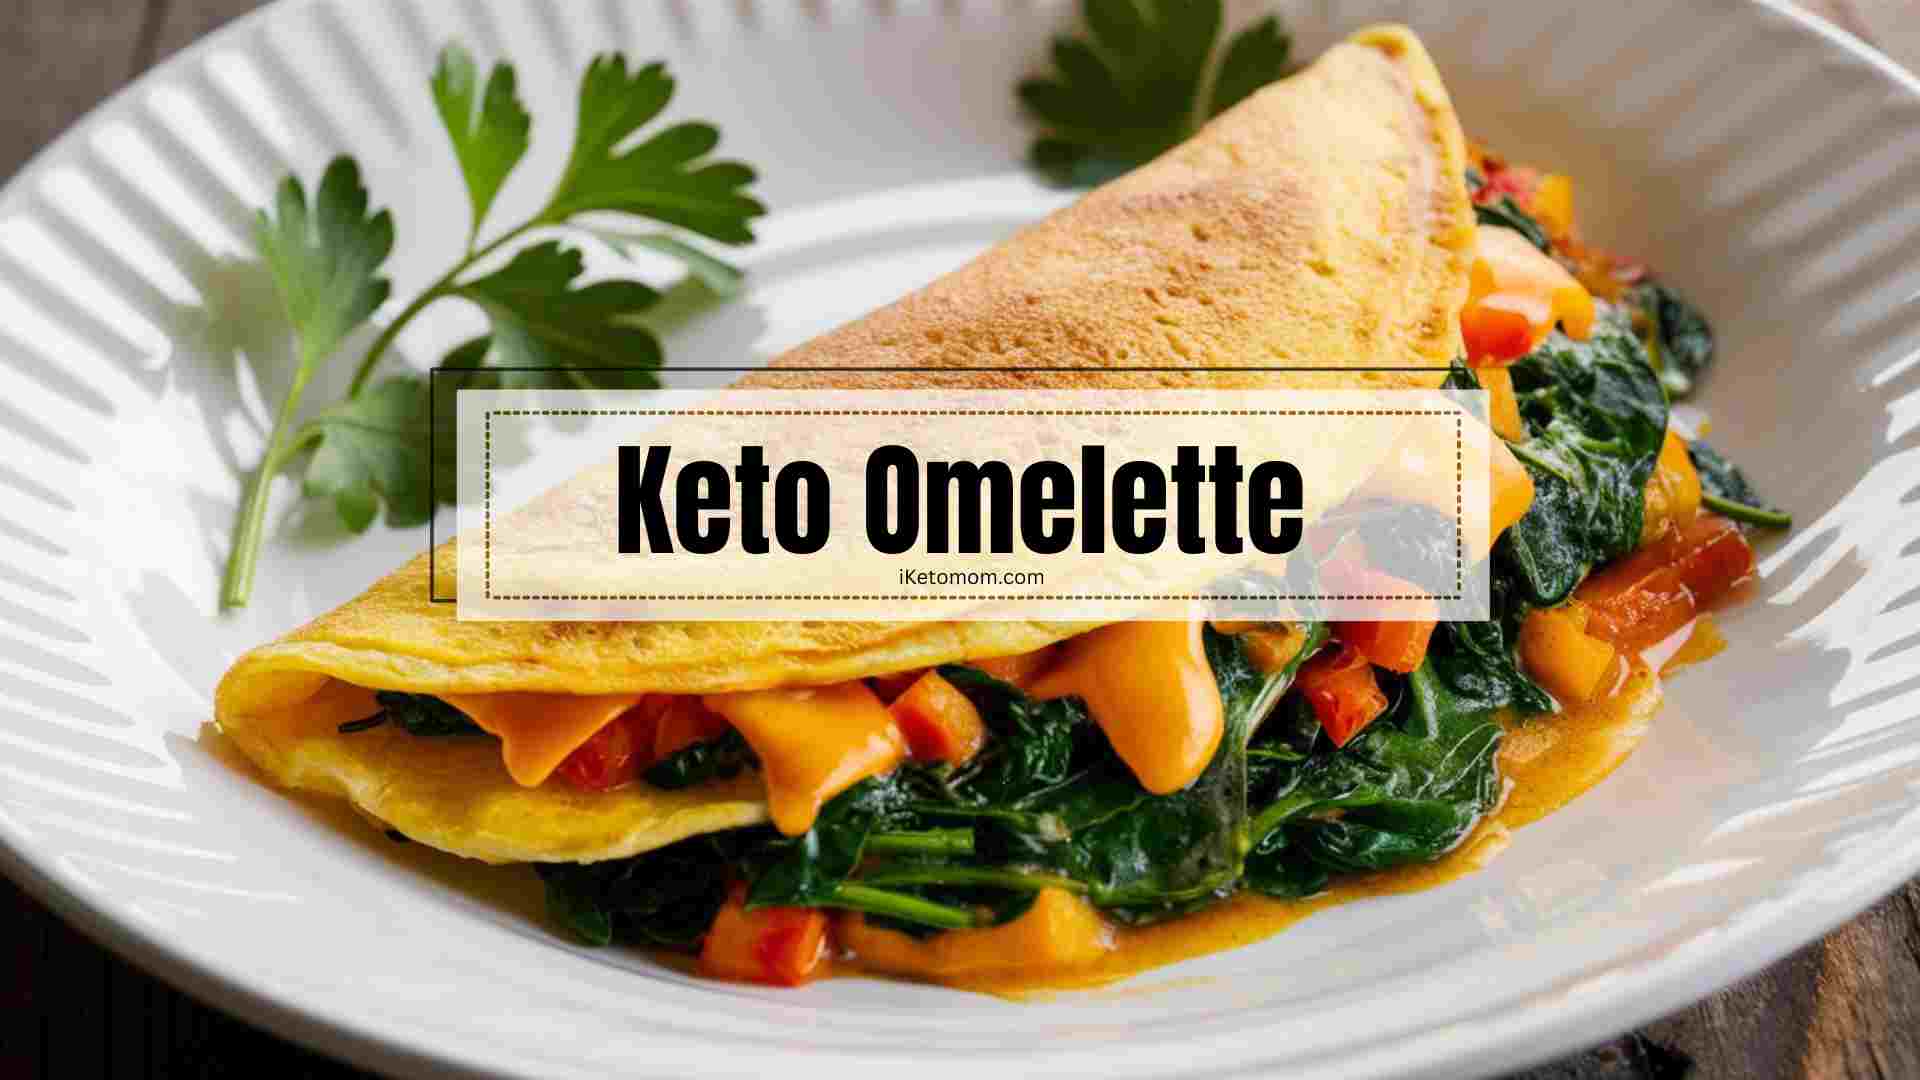 Keto Omelette